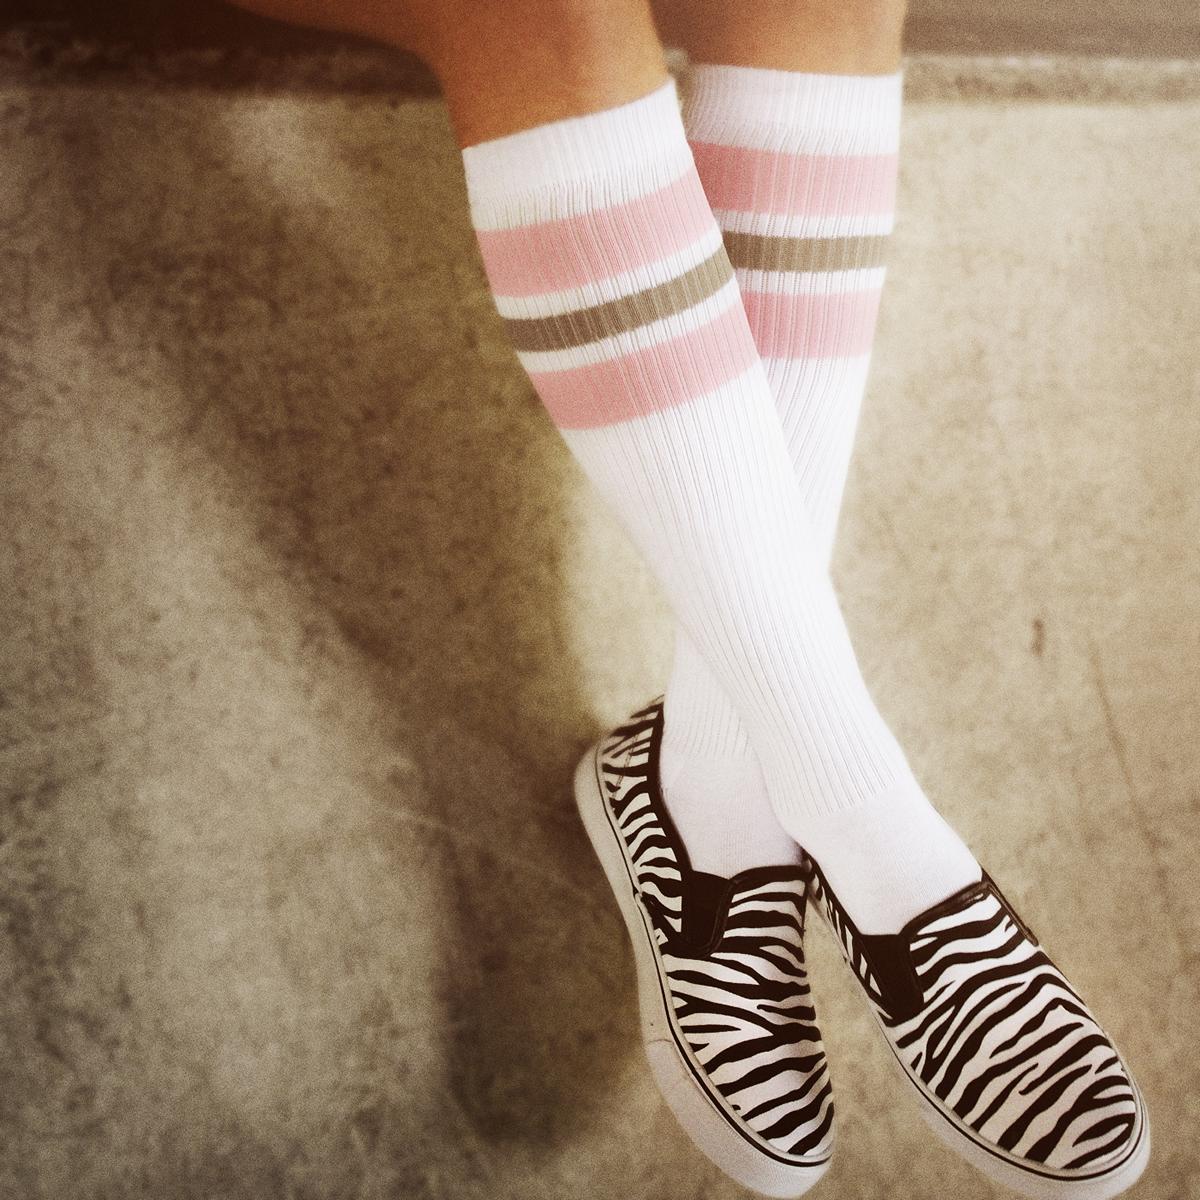 So76 the light pink Greys on white Skater-Socks Hi